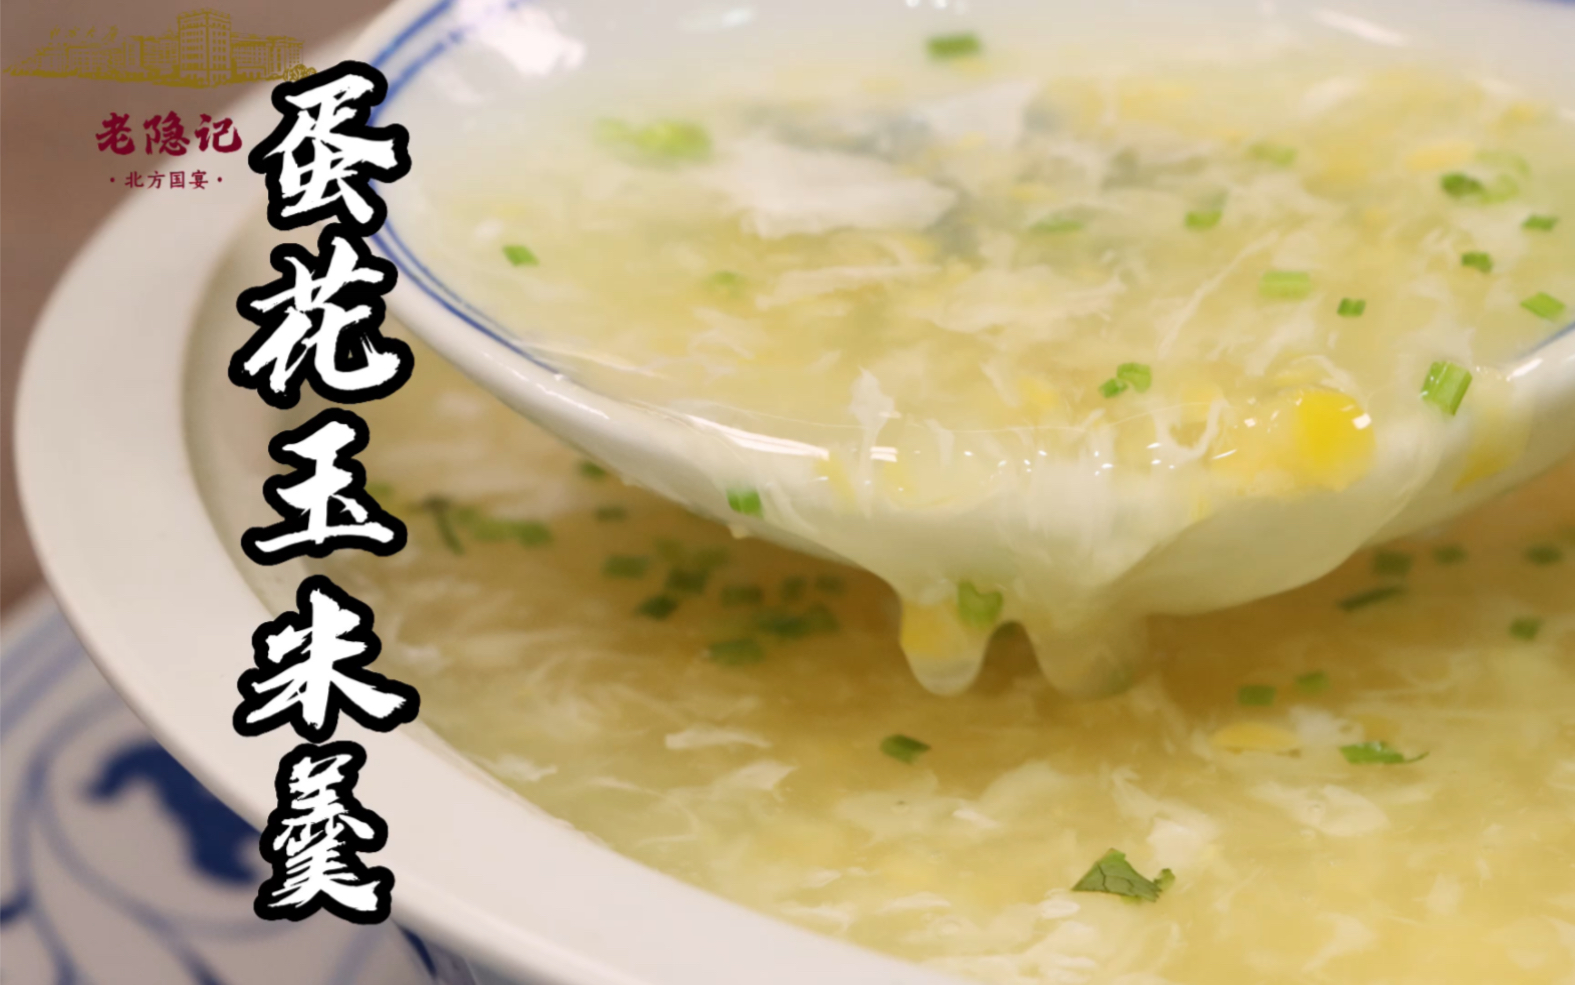 蛋花玉米濃湯 by ️雪倫の 私房料理 ️ - 愛料理